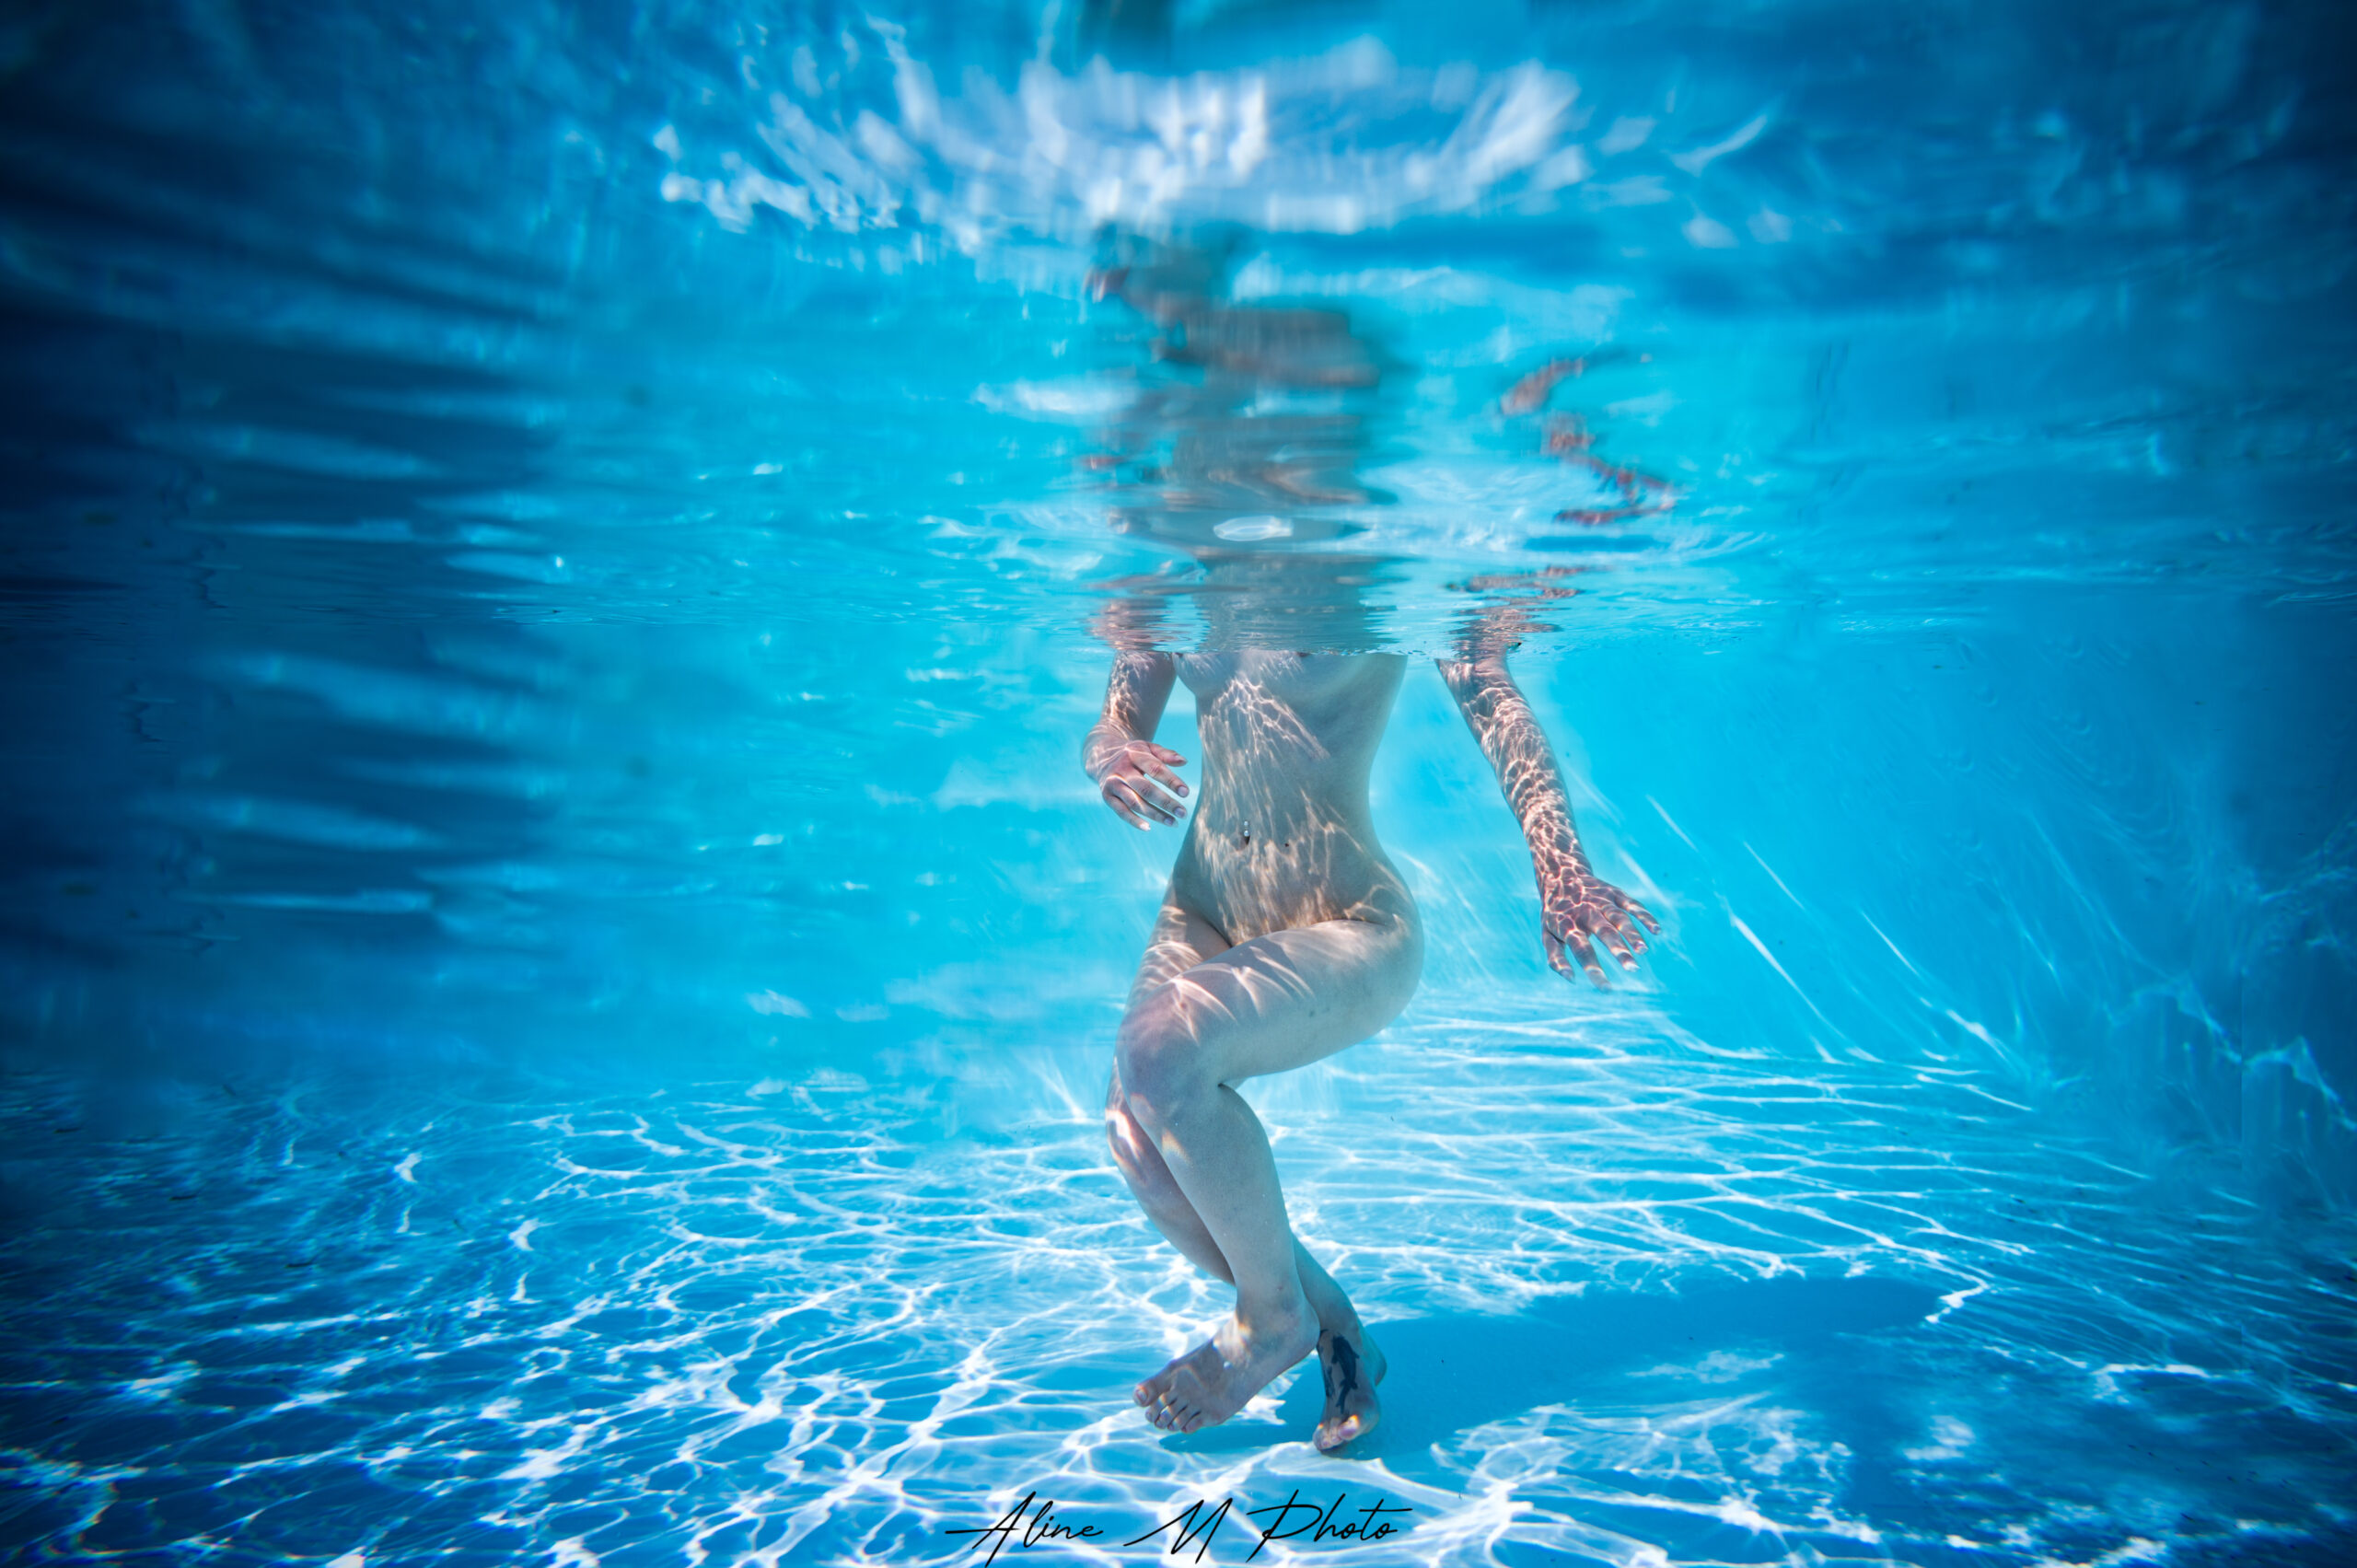 underwater sous l'eau photographie photographe grand est portrait alsace lorraine piscine grossesse lac photo couple aquatique aqua